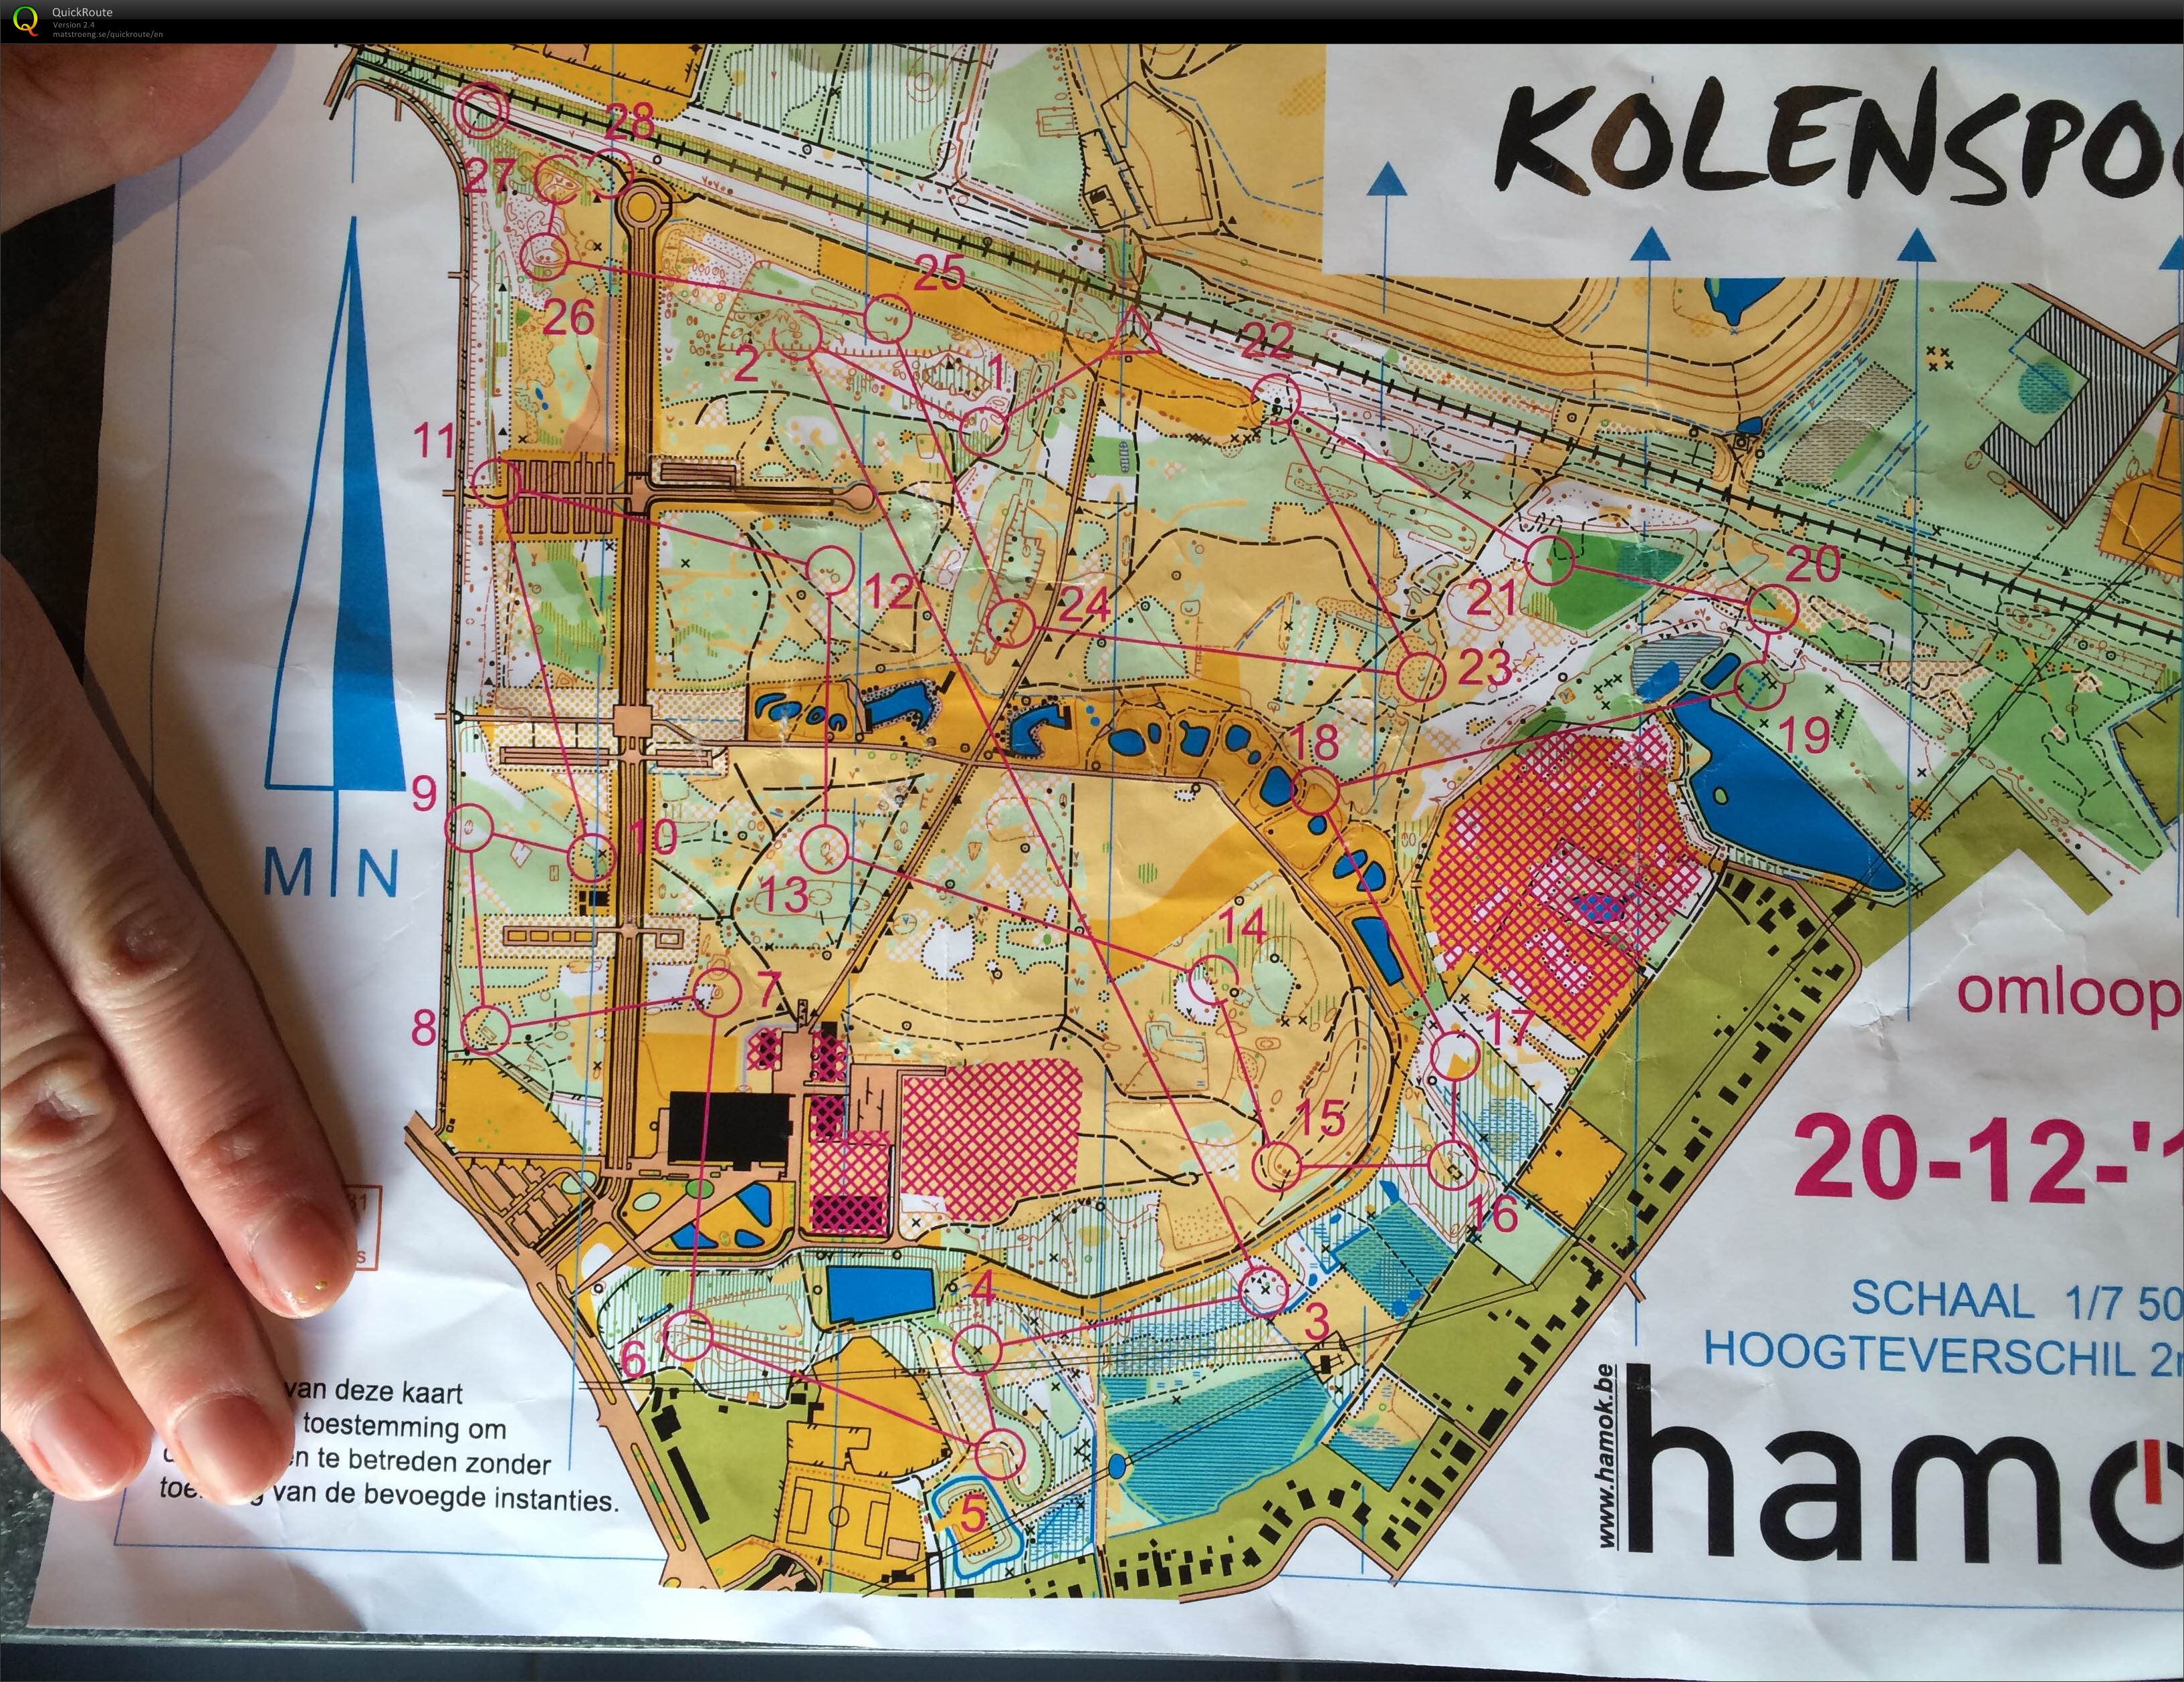 Kolenspoor (2015-12-20)